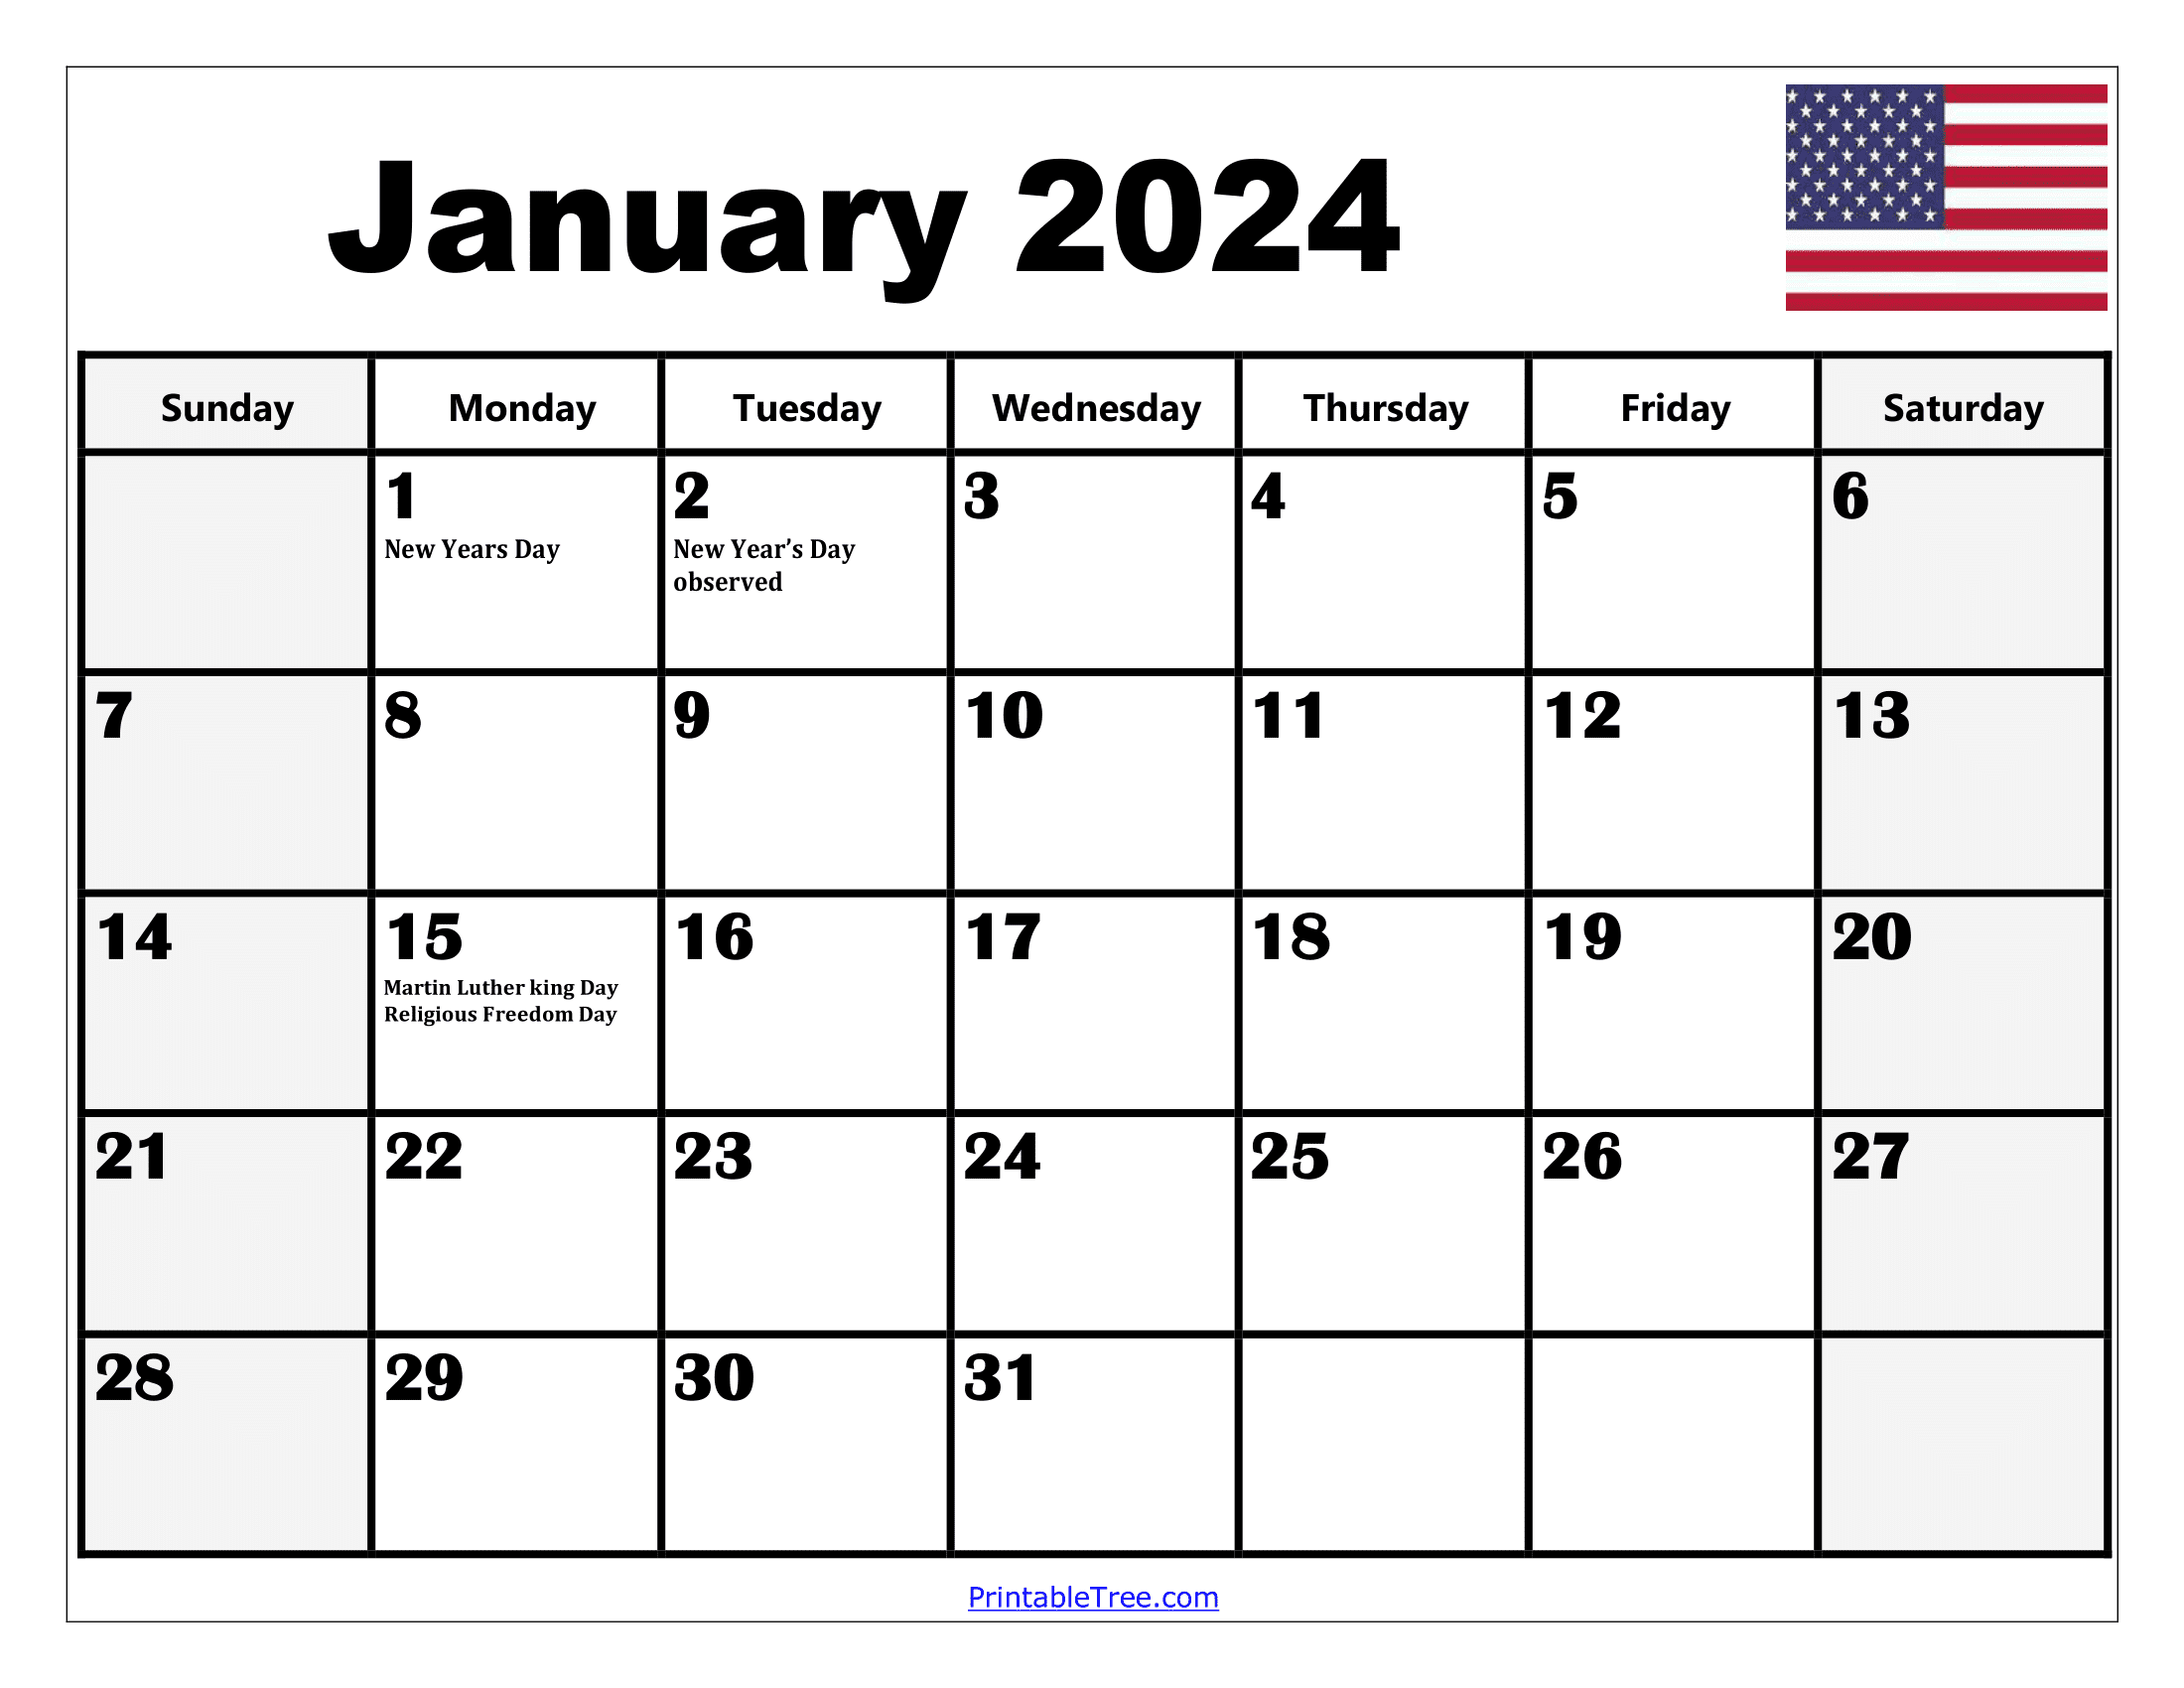 2024 Holiday Calendar Days Free Download Nov 2024 Calendar - Free Printable 2024 Calendar With Holidays November